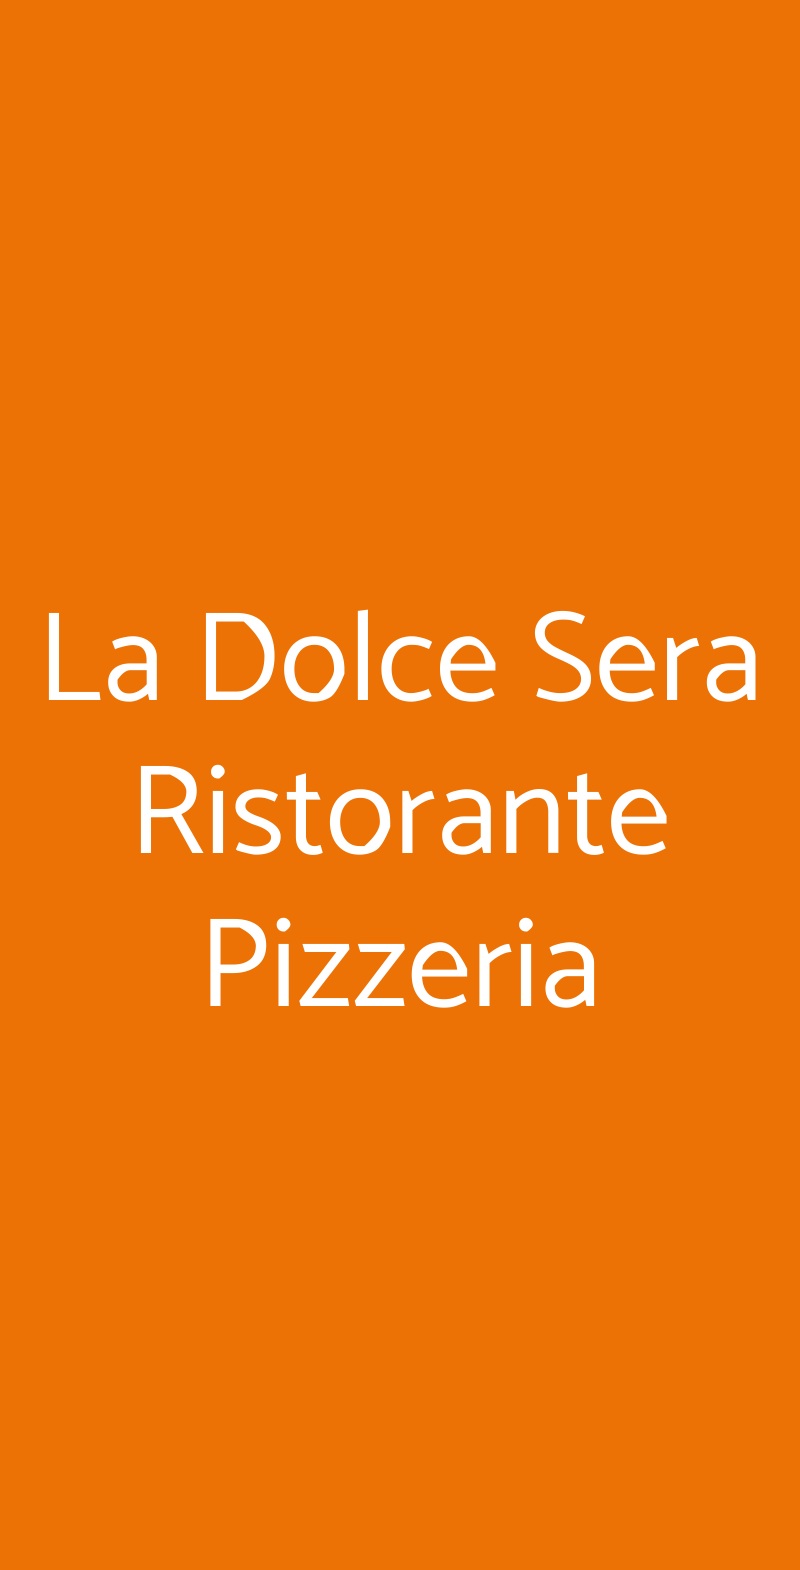 La Dolce Sera Ristorante Pizzeria Floridia menù 1 pagina